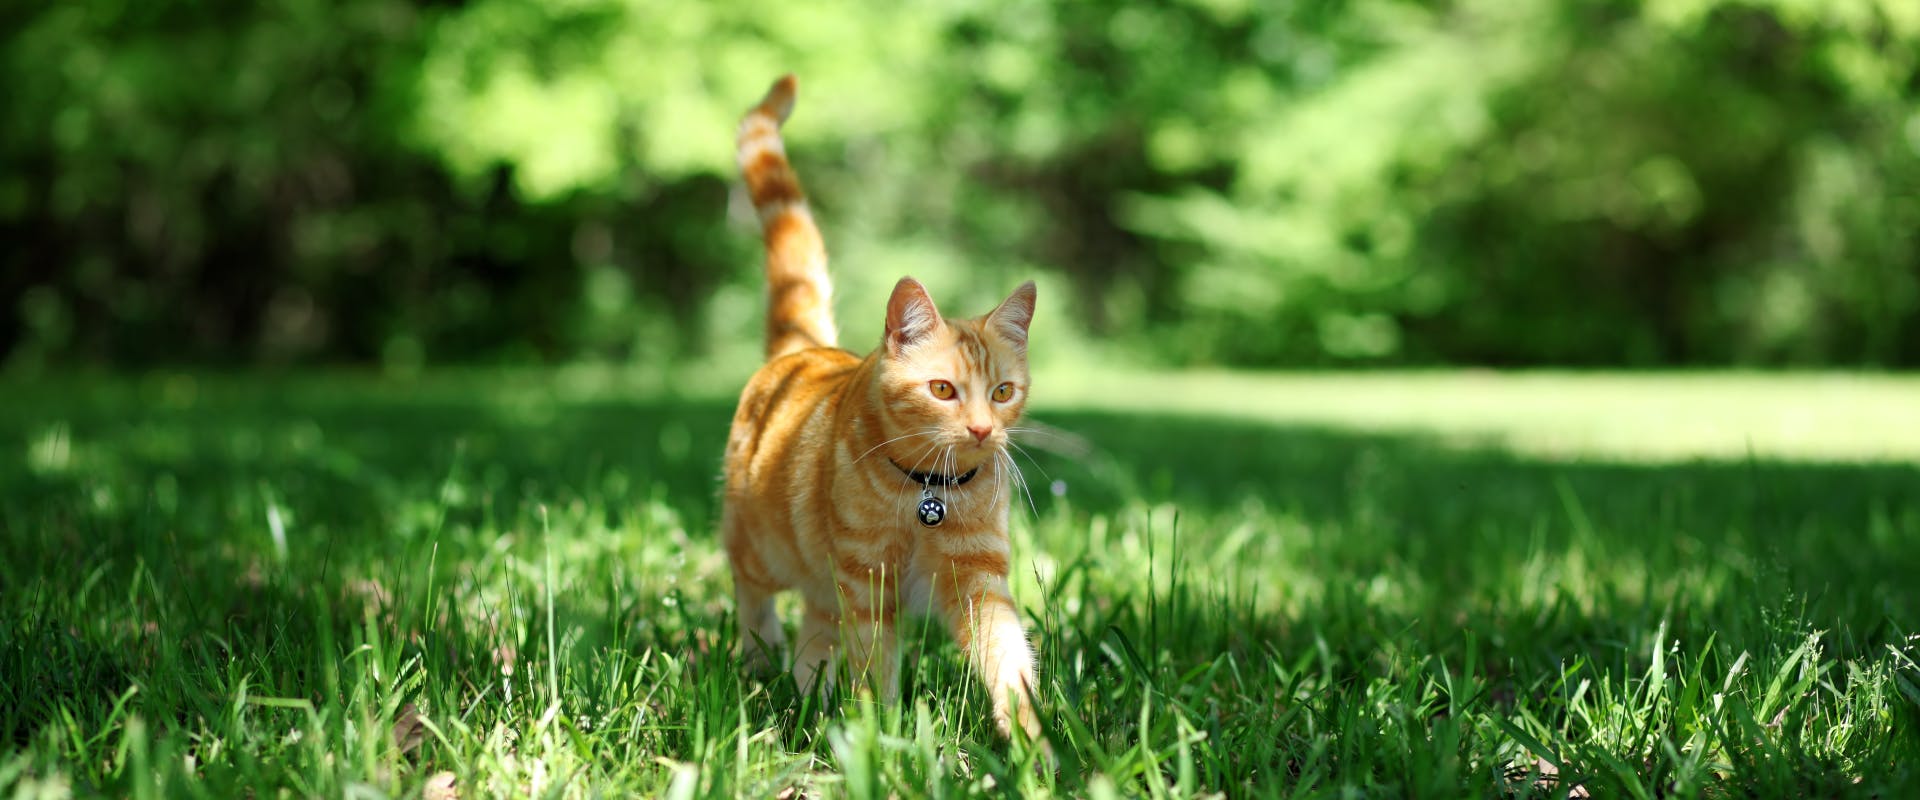 An outdoor cat walks through a garden.